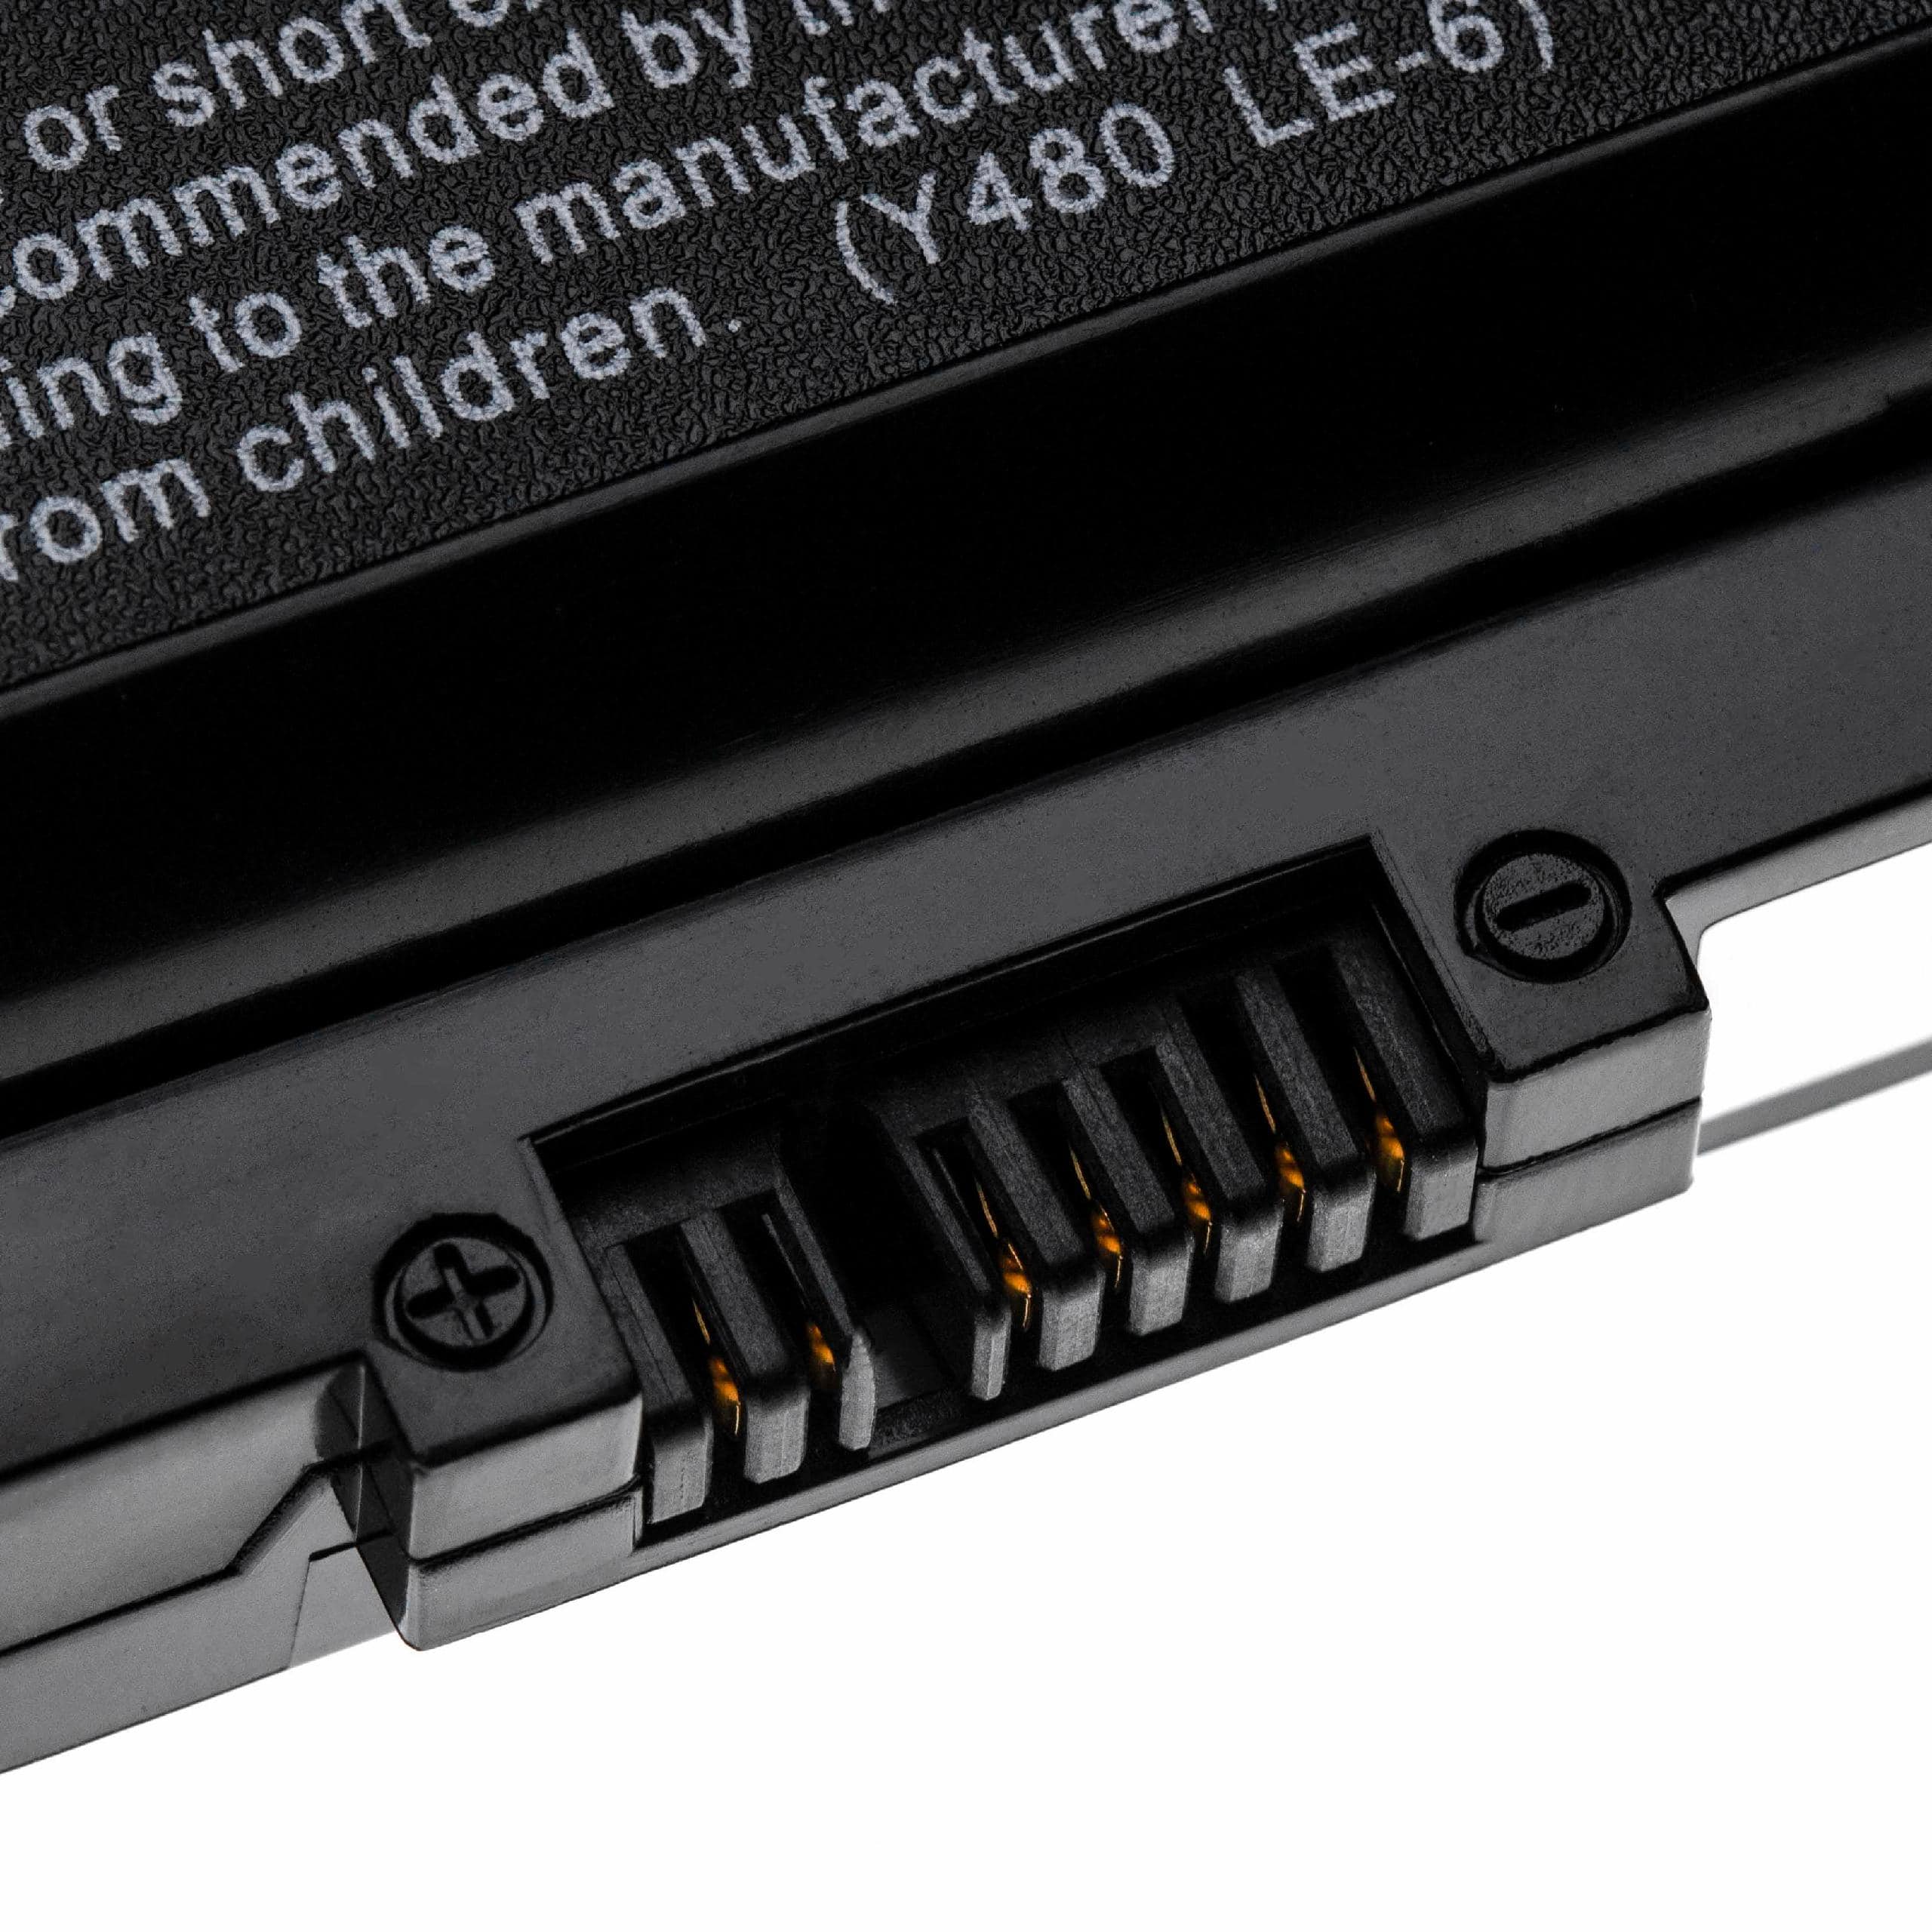 Batterie remplace Lenovo 0A36311, 121000675, 121500047 pour ordinateur portable - 5200mAh 11,1V Li-ion, noir